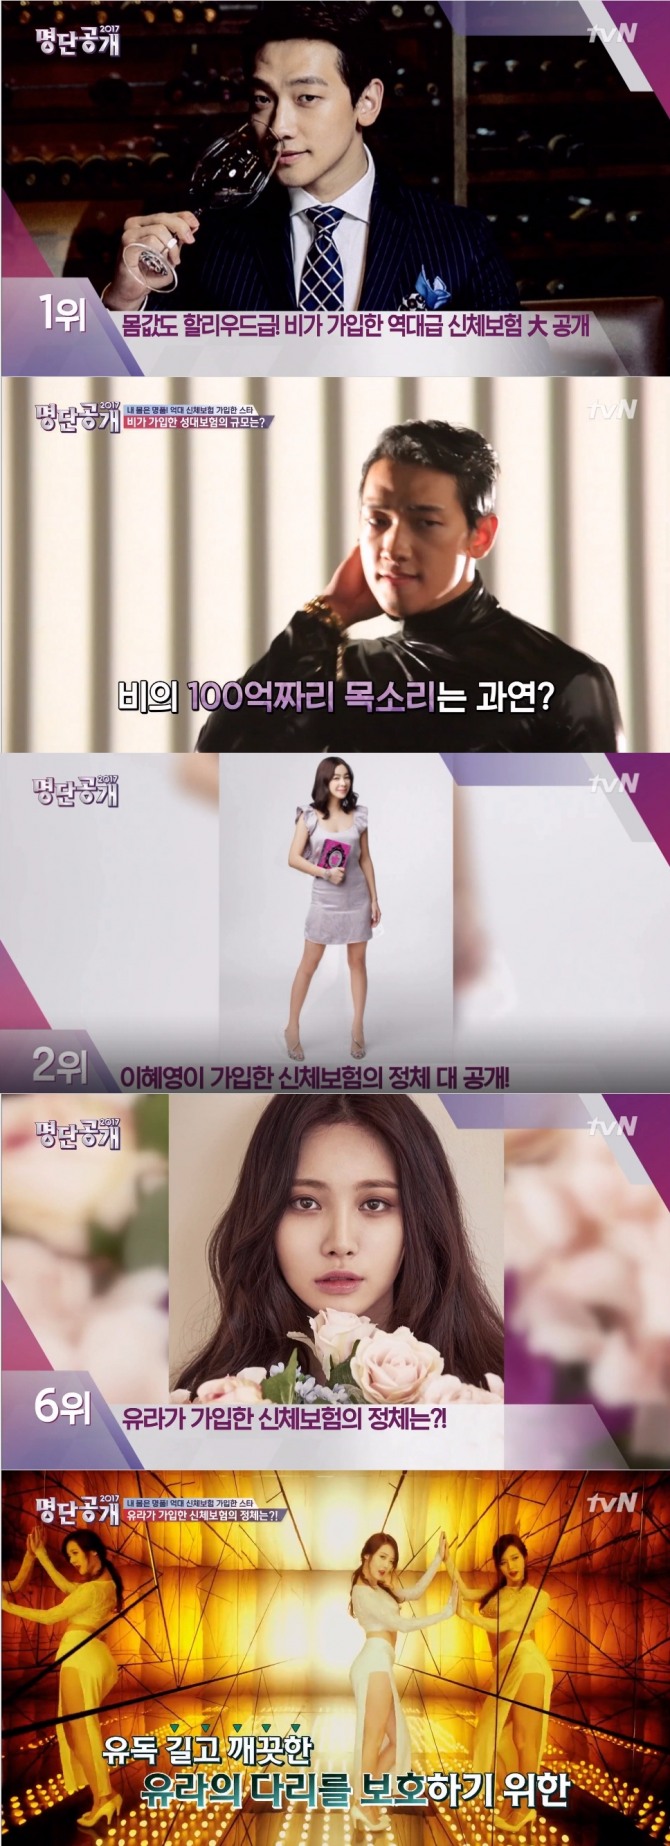 22일 방송된 케이블 채널 tvN '명단공개'에서는 신체 보험에 가입한 연예인 스타 순위가 발표돼 가수 비가 100억원대 성대 보험으로 1위에 올랐다.  사진=tvN 방송 캡처